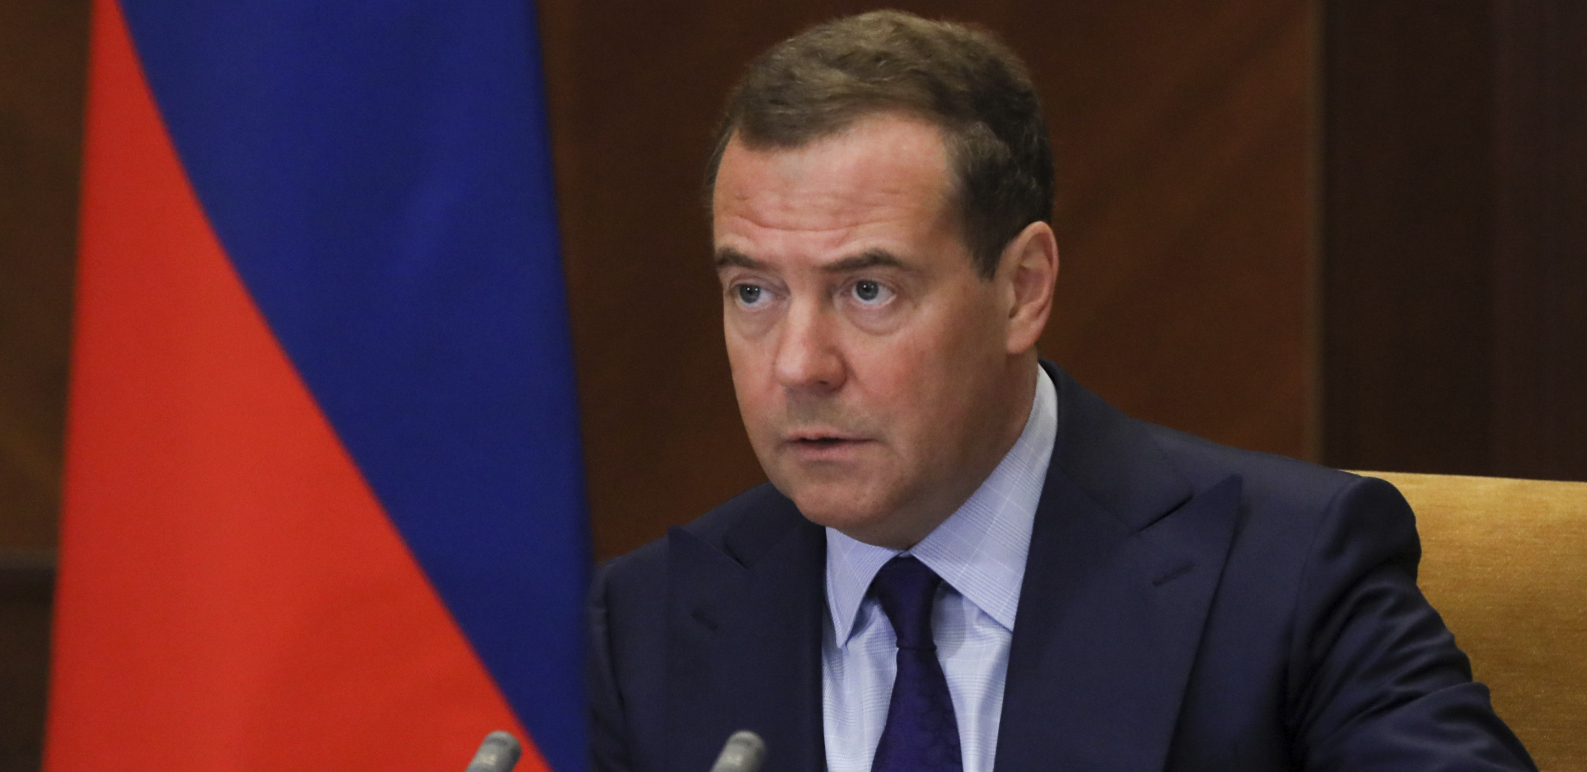 "ON JE SITAN NASLEDNIK BONAPARTE" Medvedev osuo paljbu po Makronu